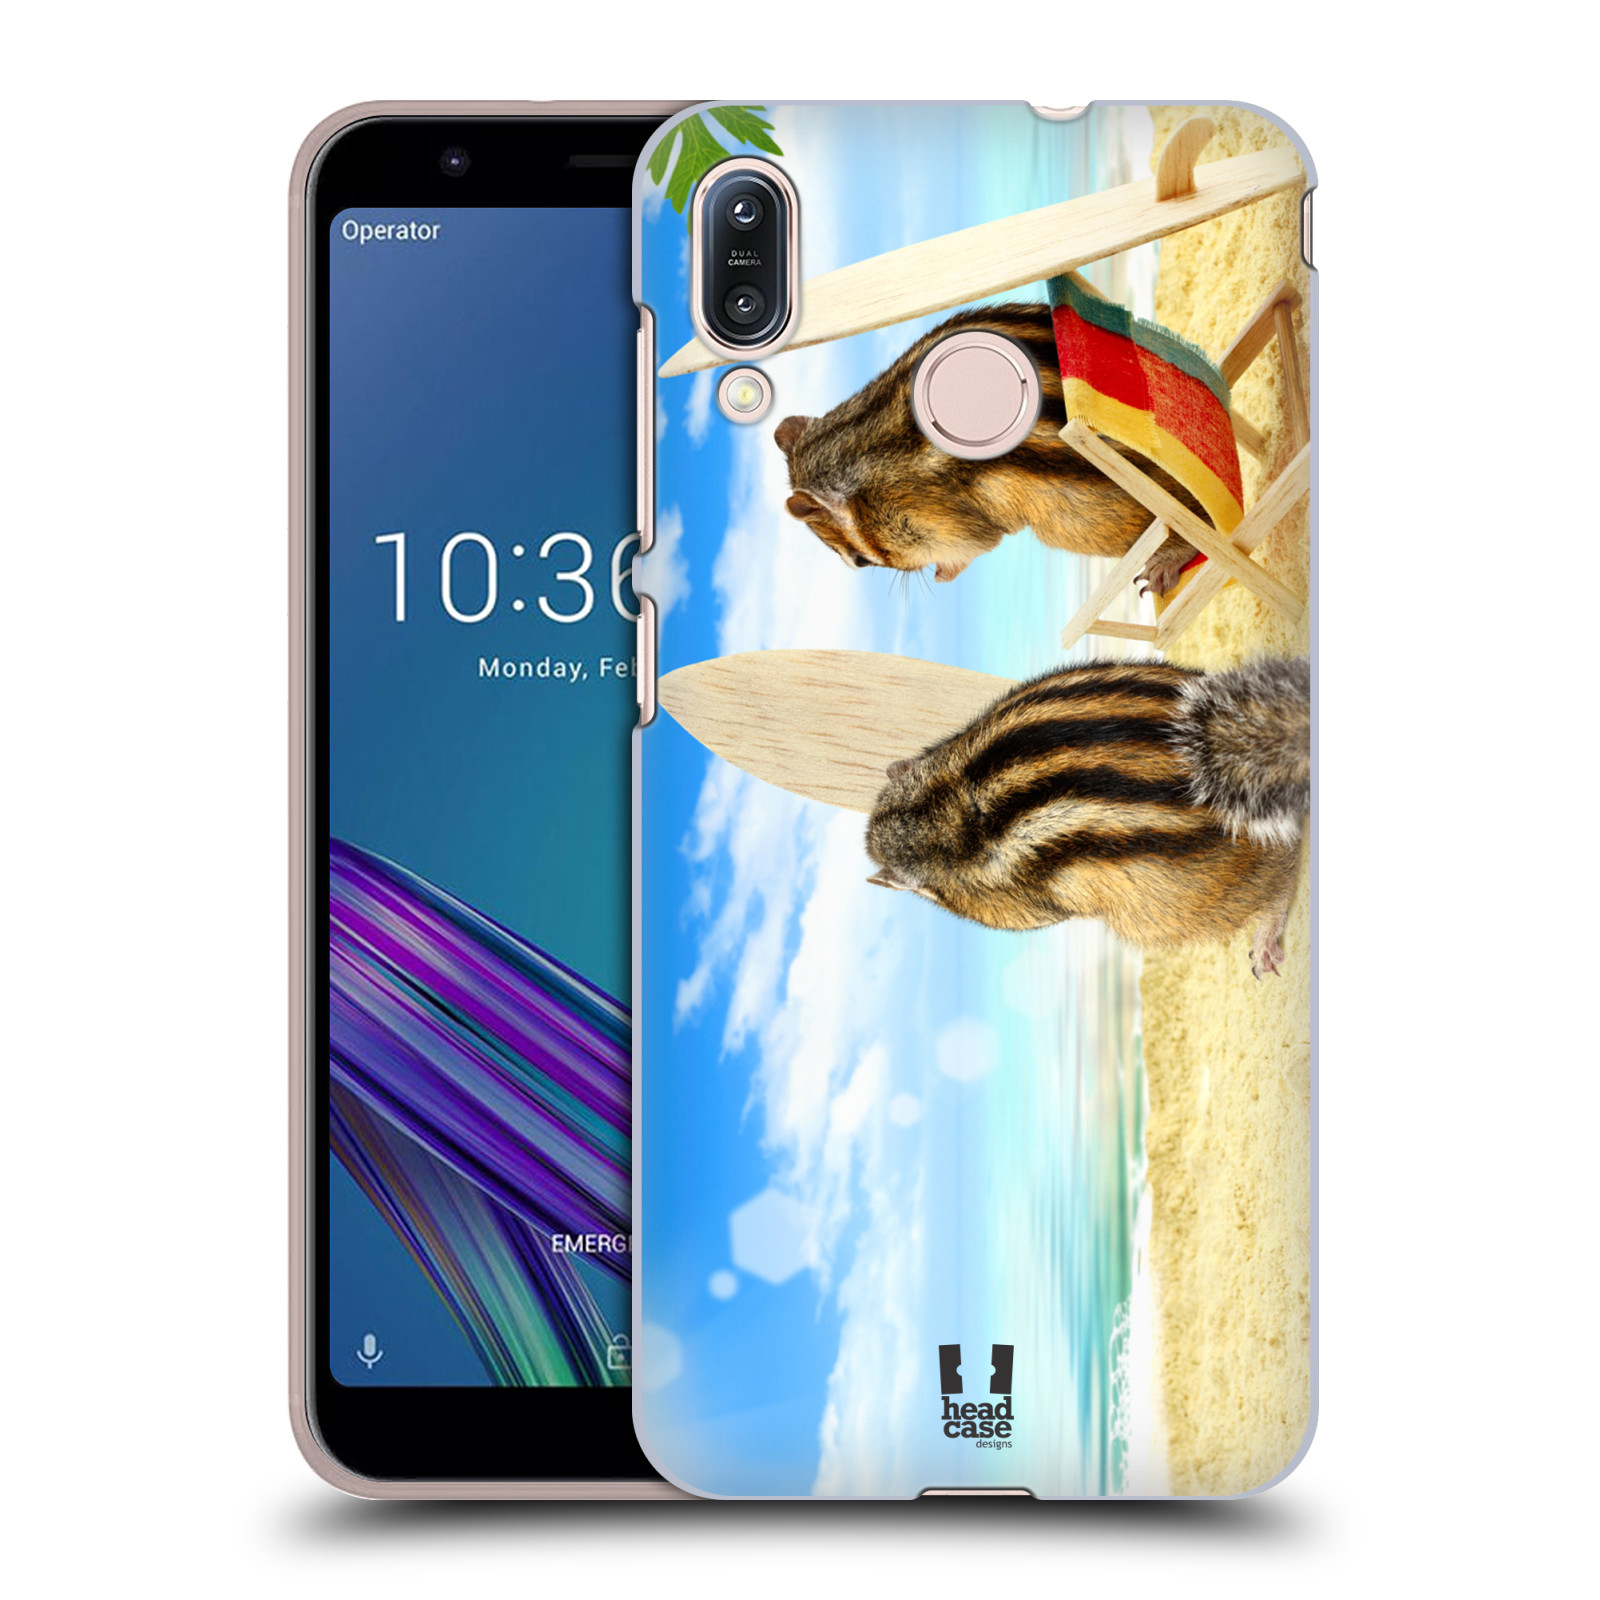 Pouzdro na mobil Asus Zenfone Max M1 (ZB555KL) - HEAD CASE - vzor Legrační zvířátka veverky surfaři u moře